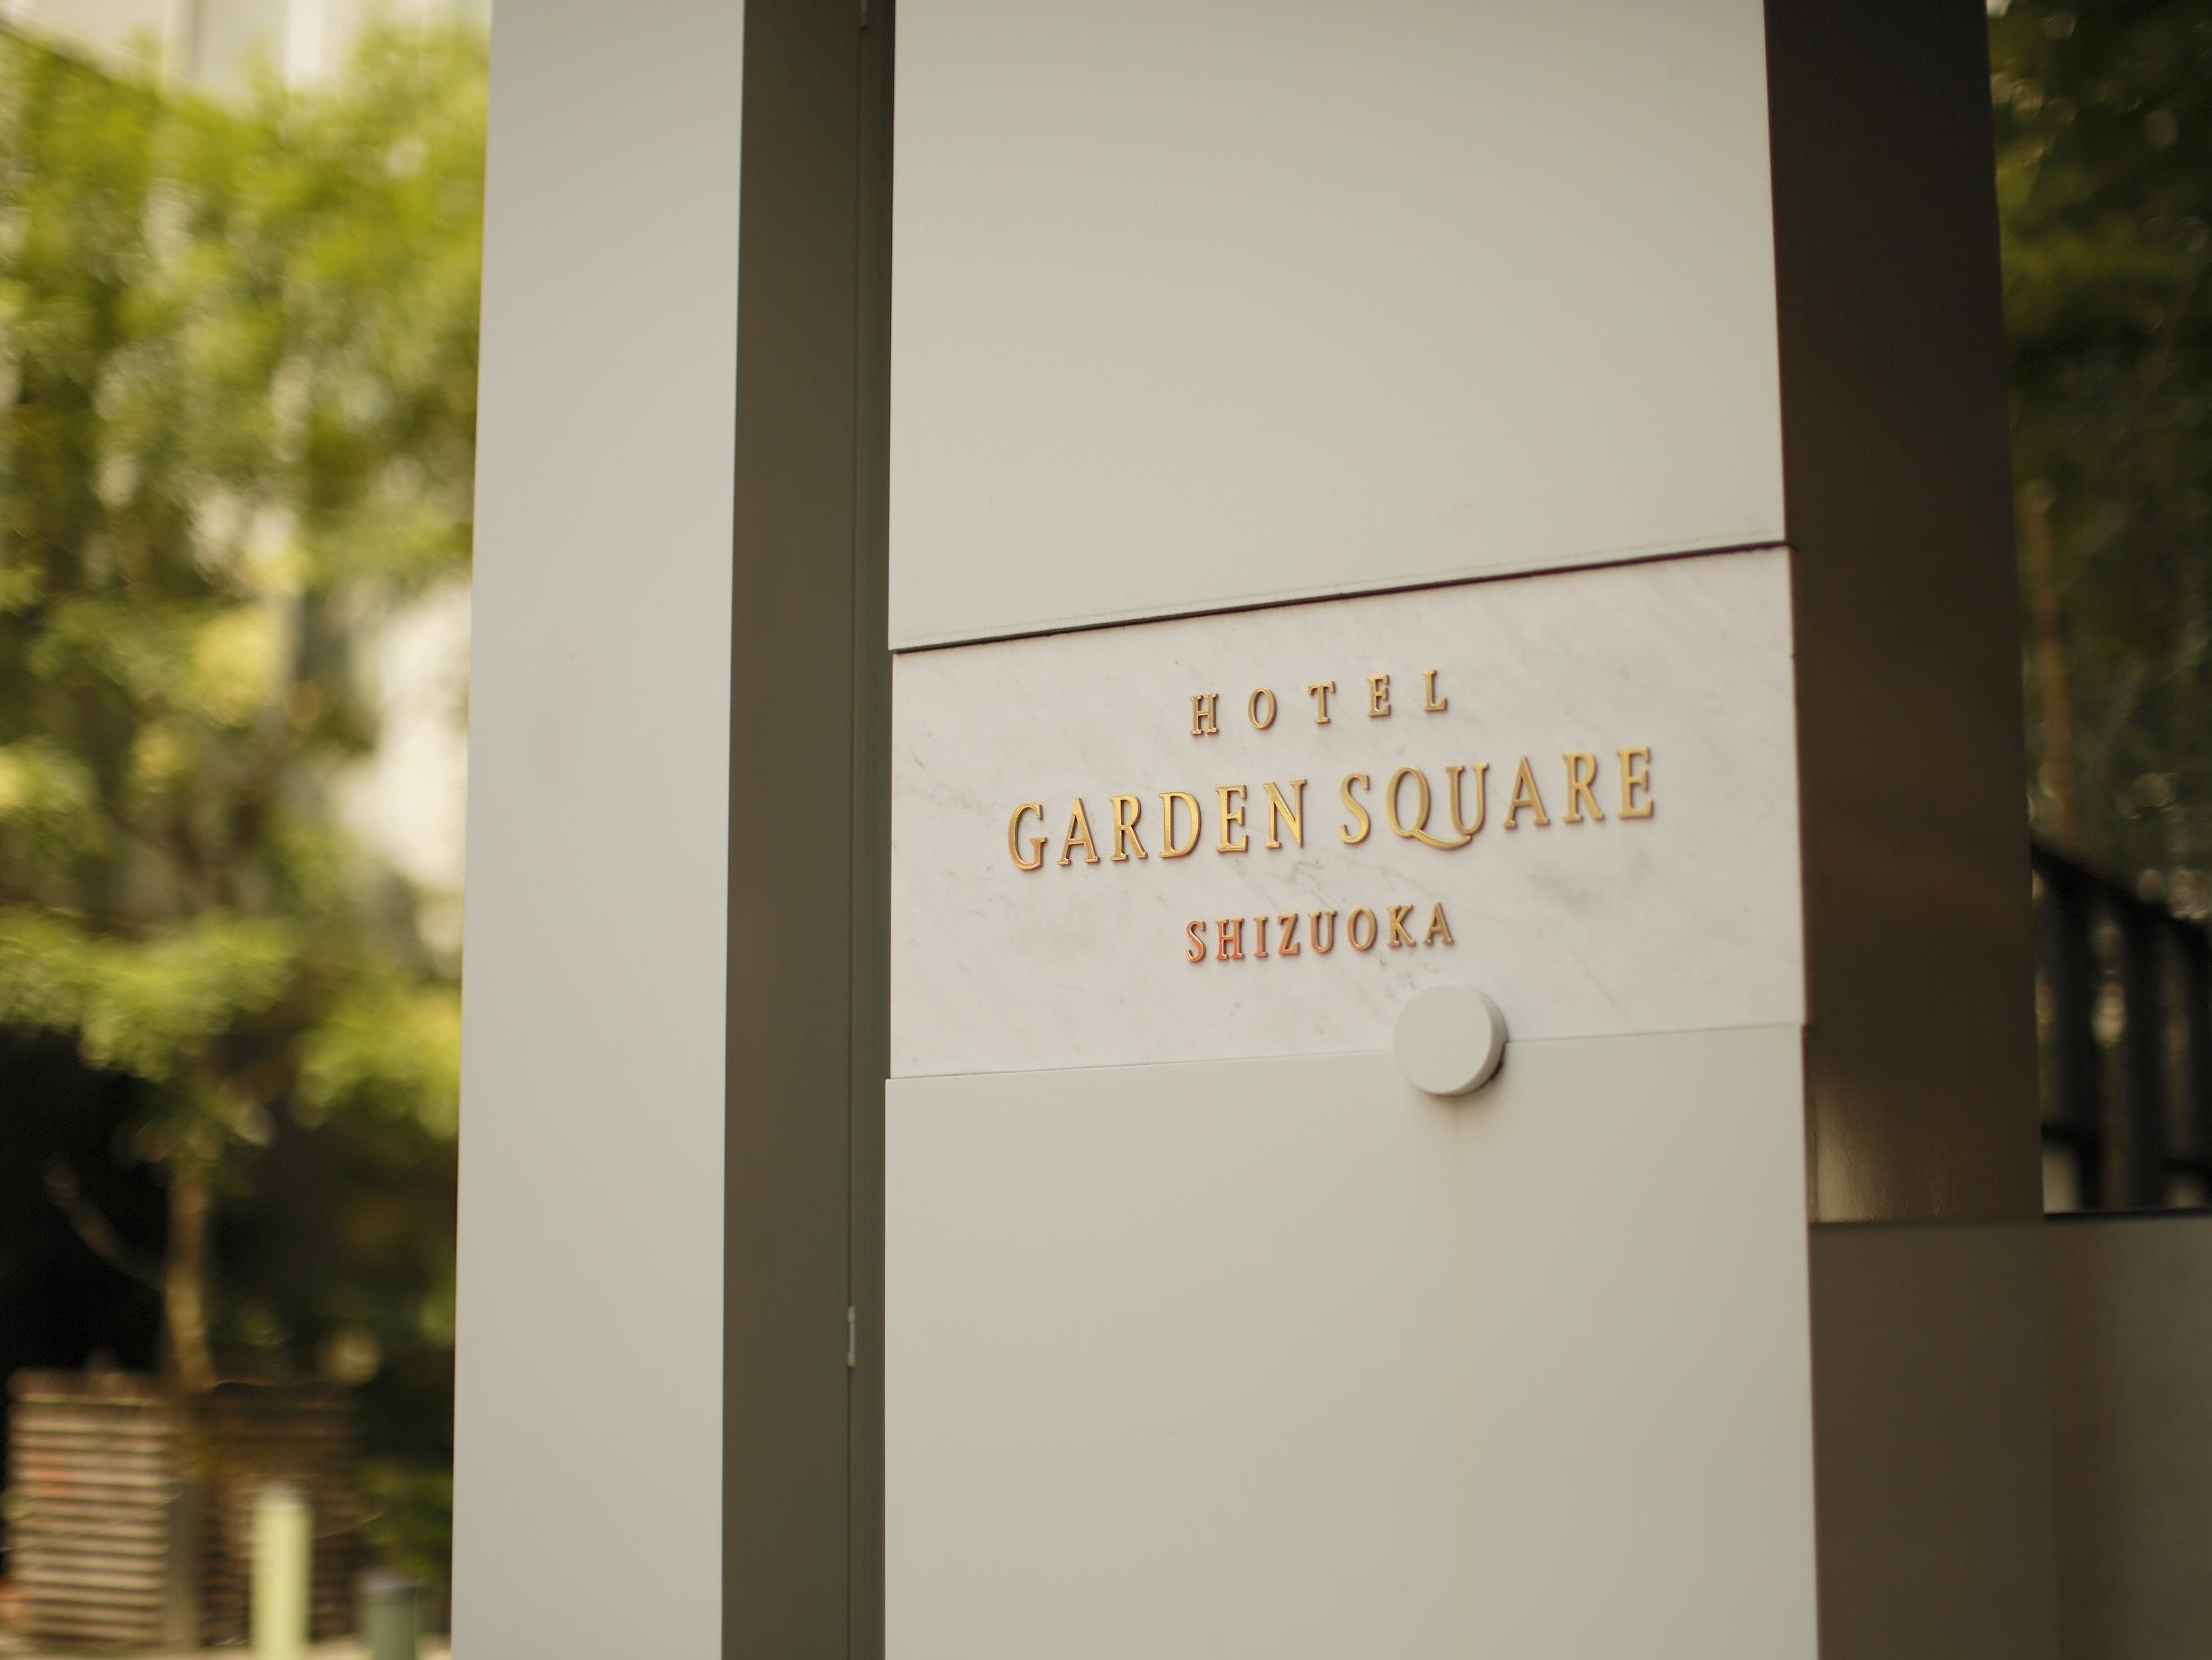 Hotel Garden Square Shizuoka image 1